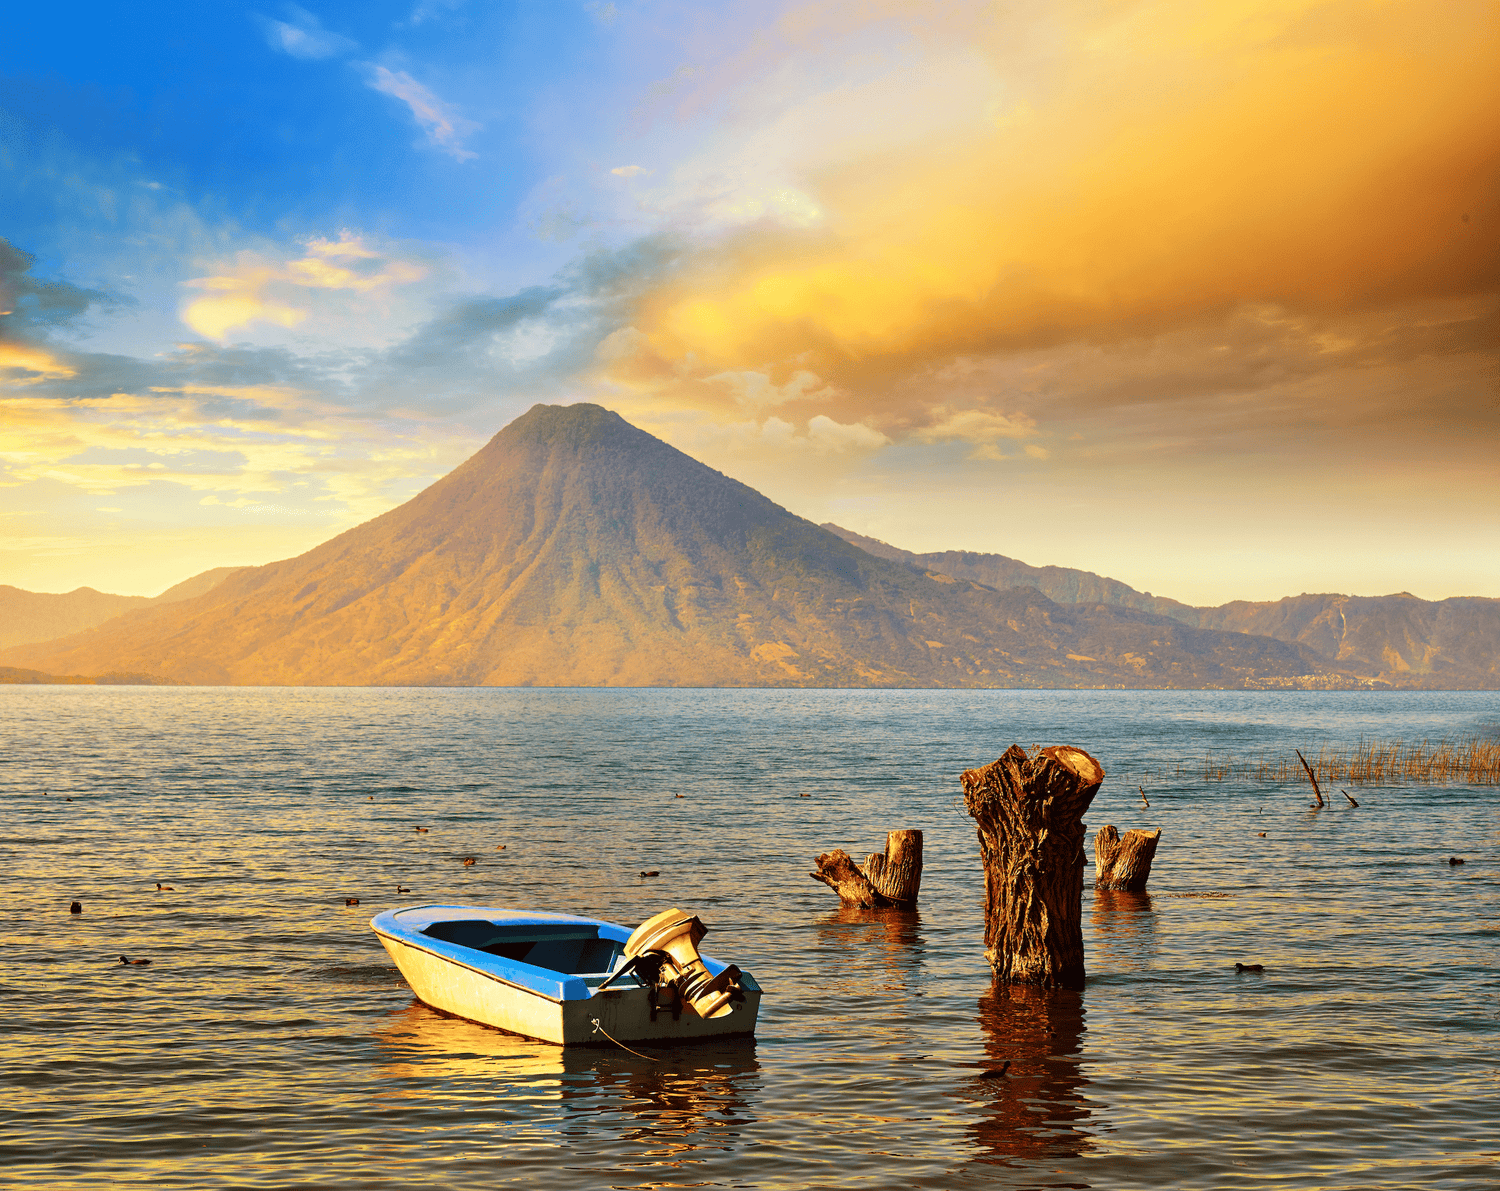 Ein malerischer Sonnenuntergang über dem Atitlán-See in Guatemala, mit einem ruhigen Boot im Vordergrund. Im Hintergrund erhebt sich majestätisch ein Vulkan, umgeben von Bergen, die in warmen, goldenen Farben des Sonnenuntergangs getaucht sind. Der Himmel ist eine Mischung aus Blau und Orange, was eine friedliche und idyllische Atmosphäre schafft.